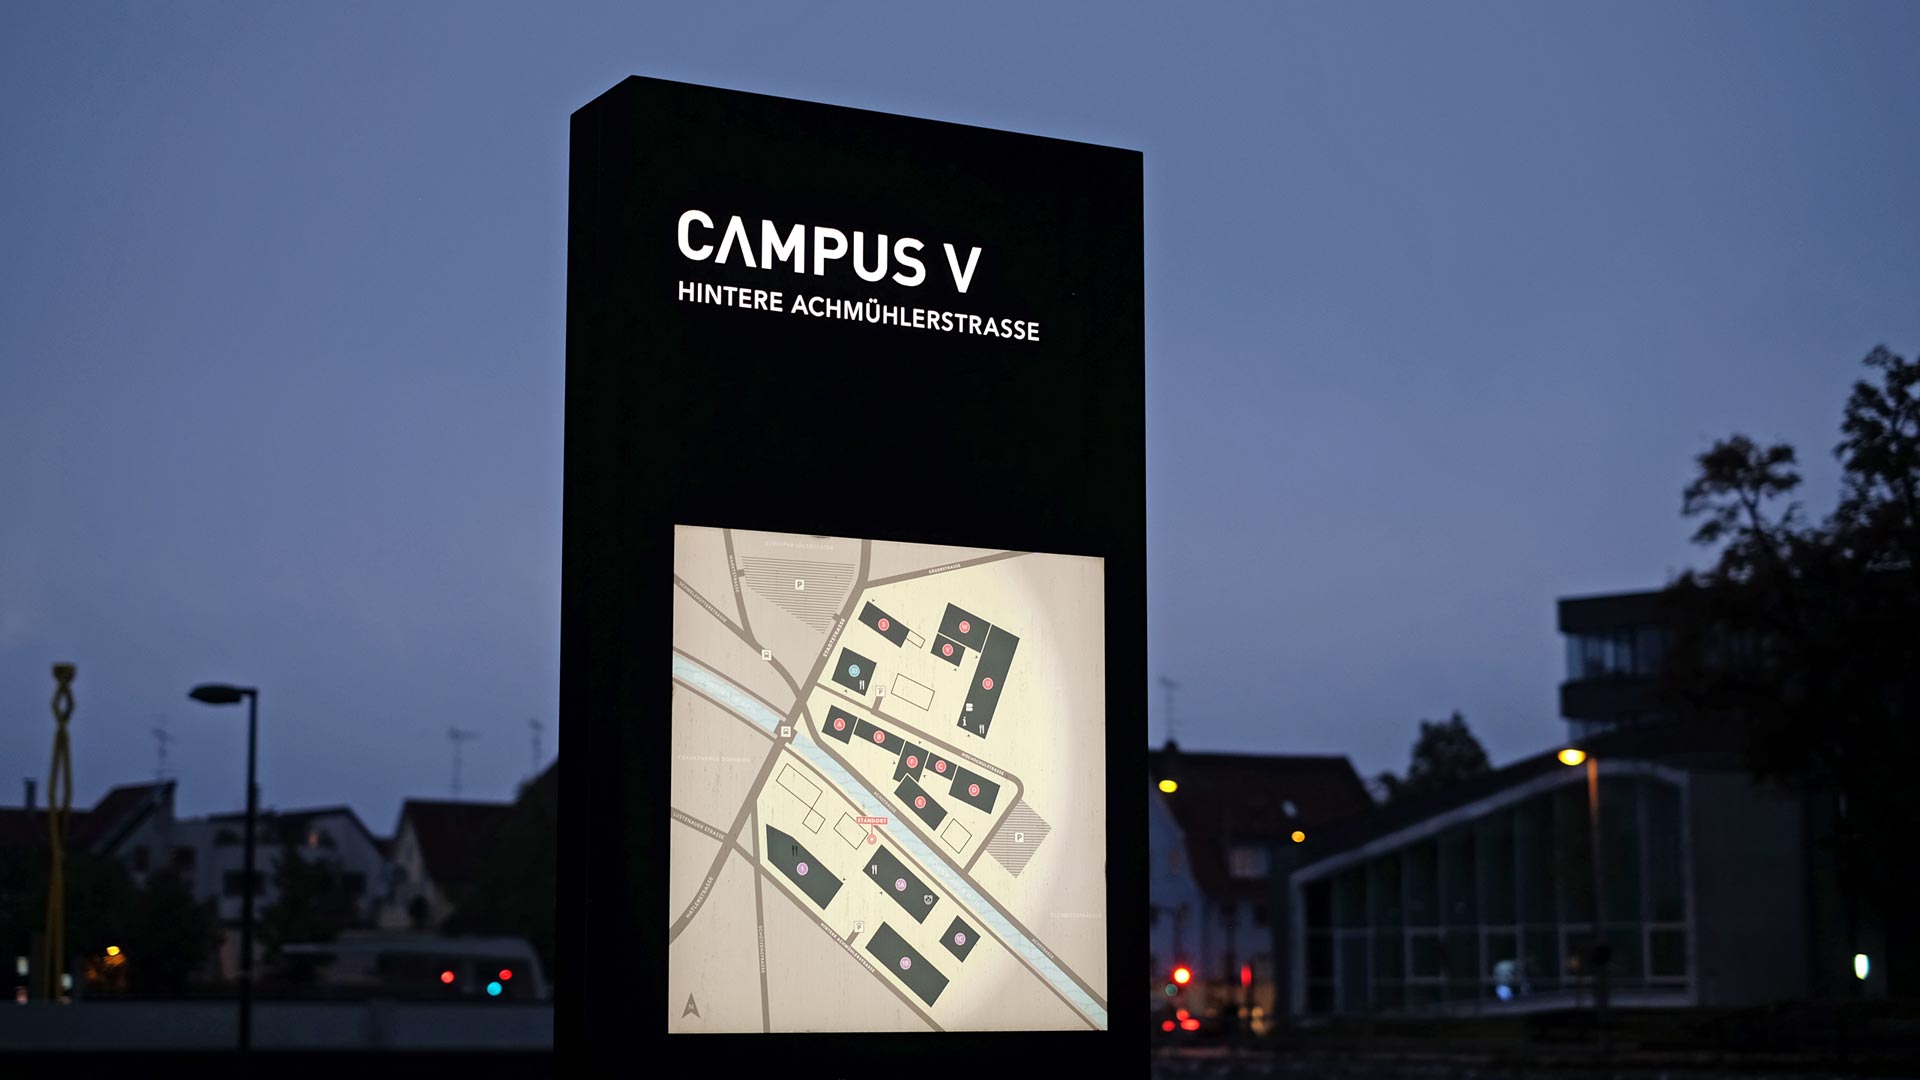 Campus V